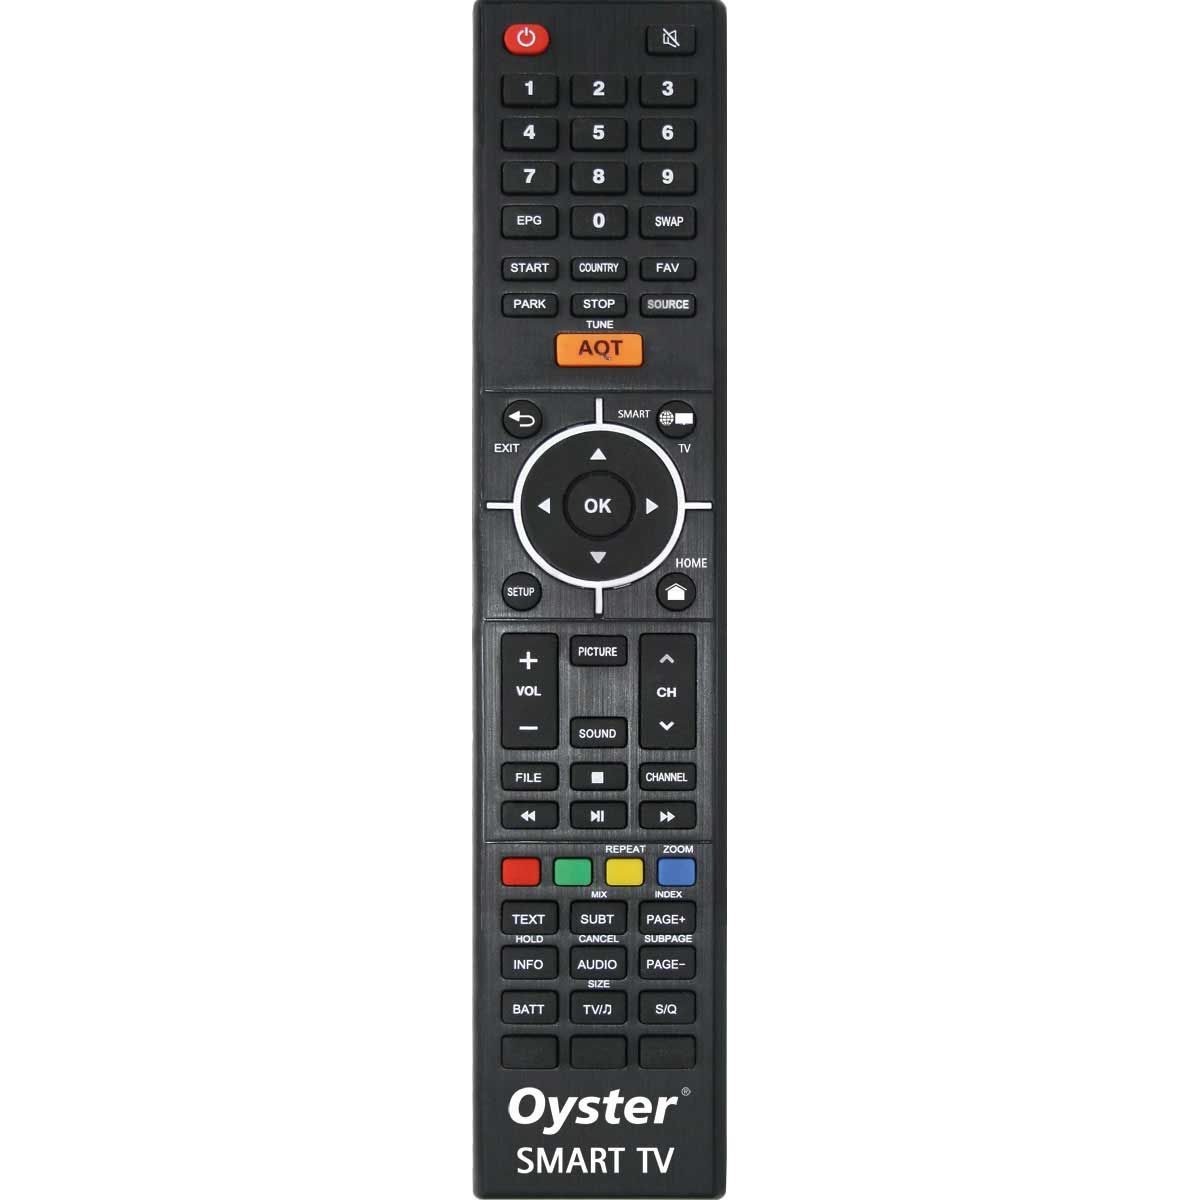 TEN HAAFT Oyster 70 Premium Sat-Anlage TWIN mit Smart TV 24 Zoll  - 87536 - 88294